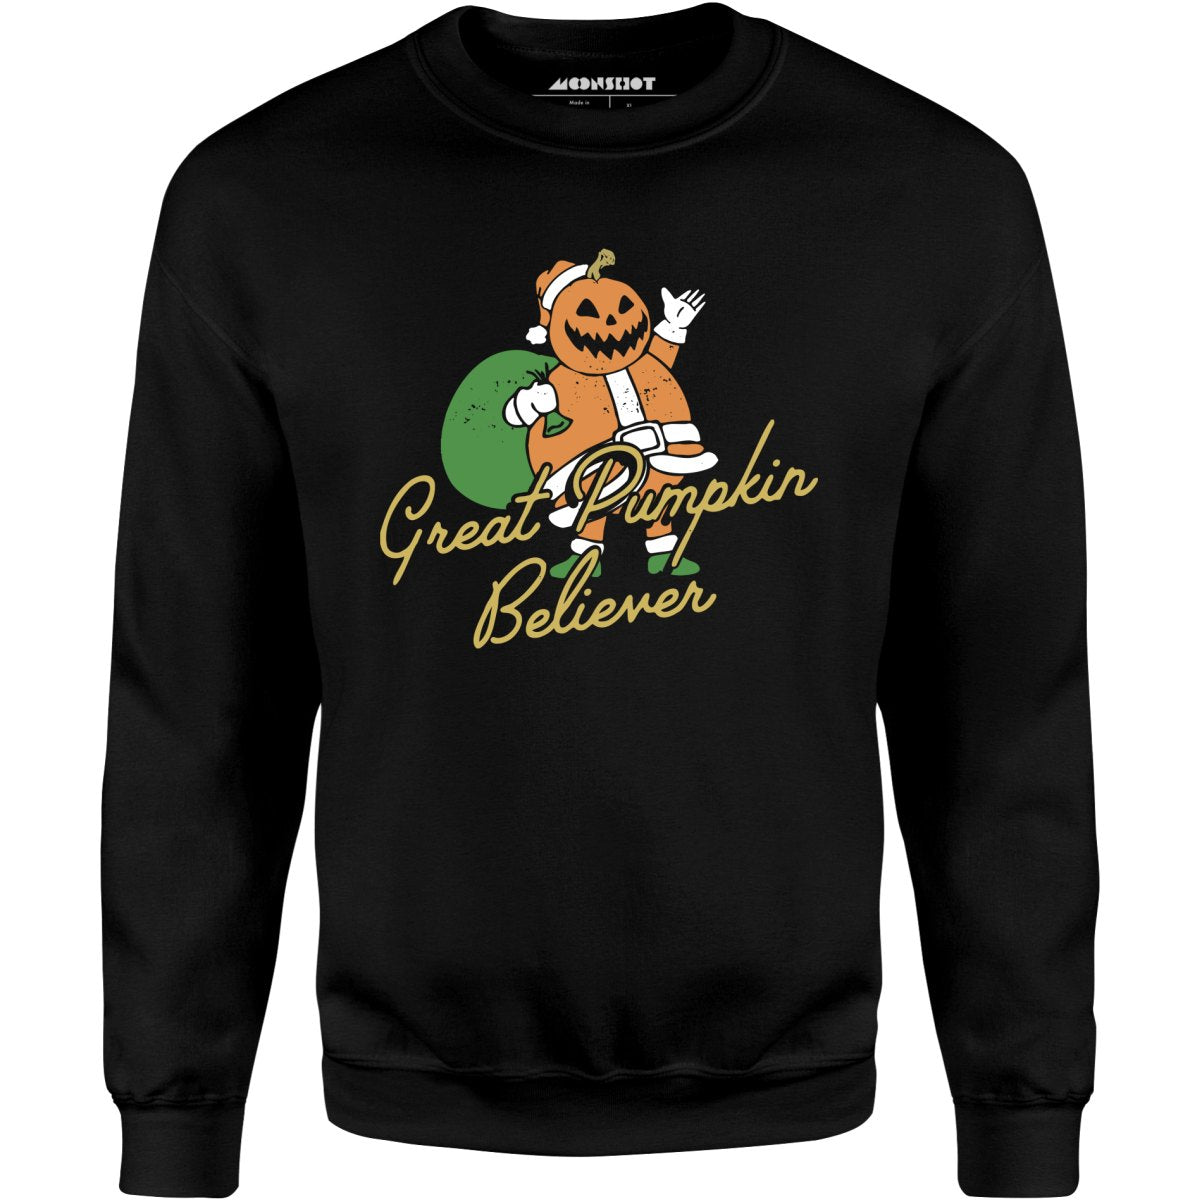 Great Pumpkin Believer - Unisex Sweatshirt